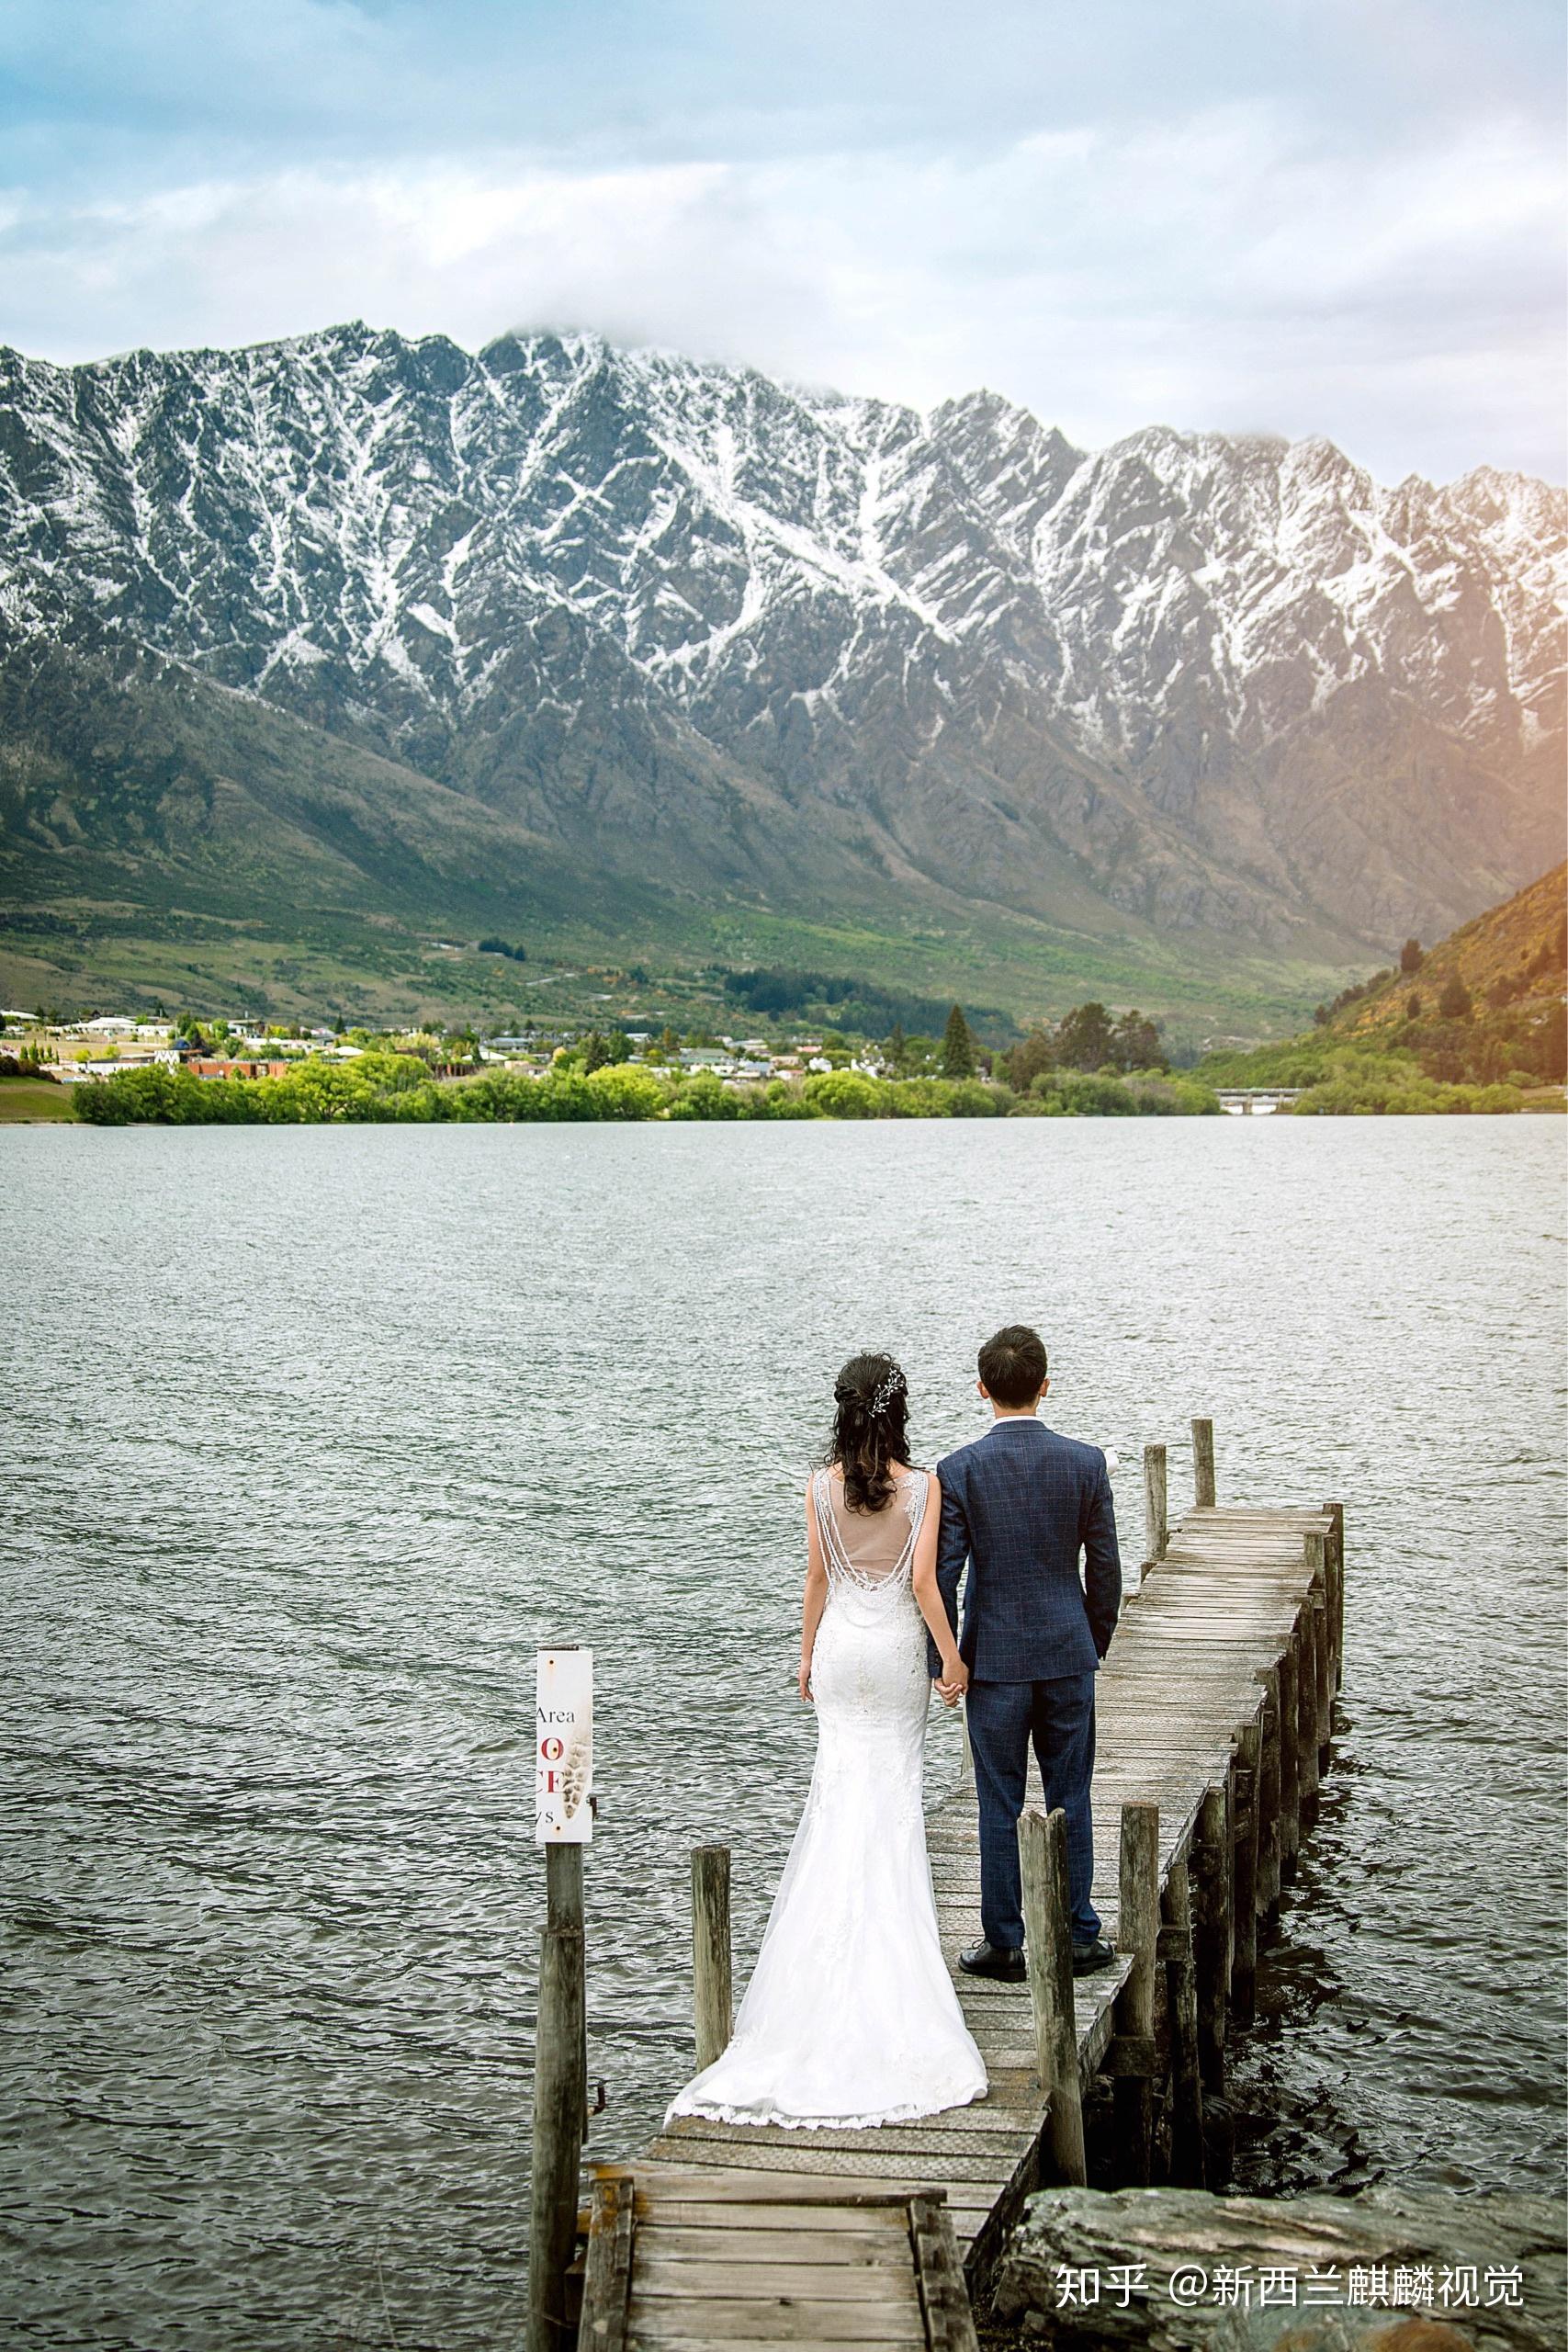 想去新西兰拍婚纱照,请问什么时候去比较好? 